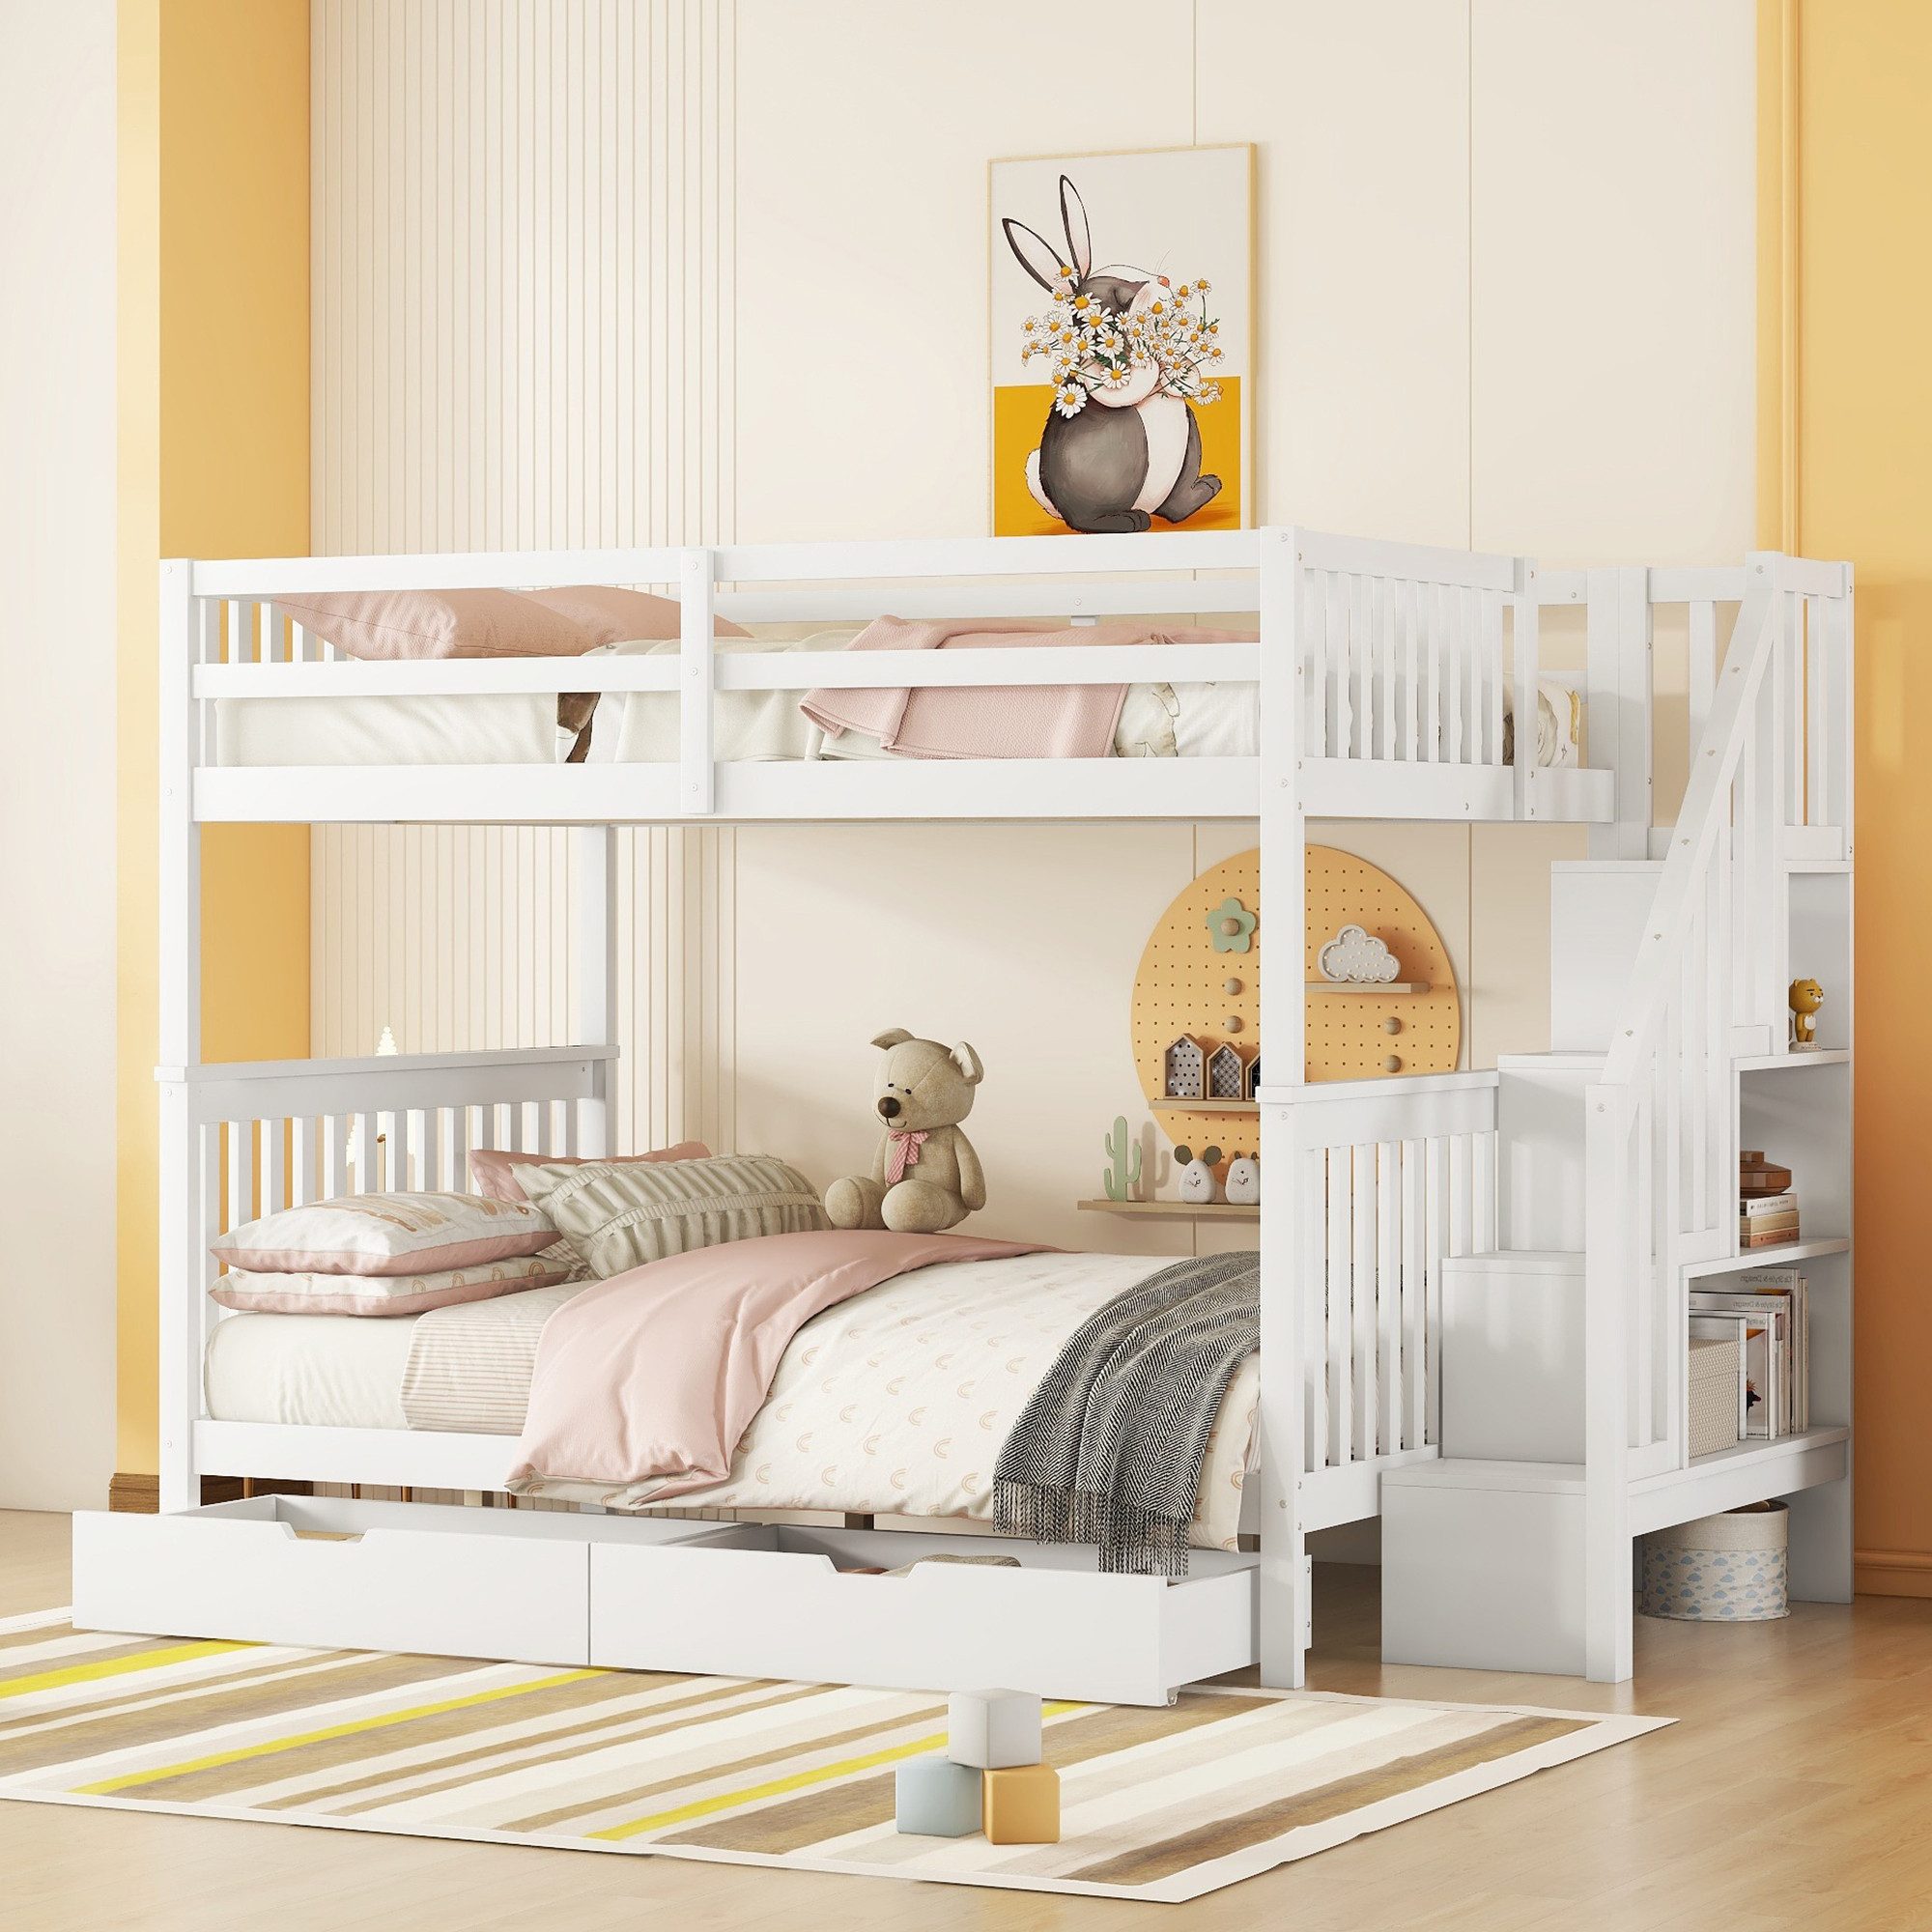 MODFU Etagenbett Kinderbett (Treppenregal, ausgestattet mit zwei Schubladen, hohe Geländer, 140*200cm), ohne Matratze